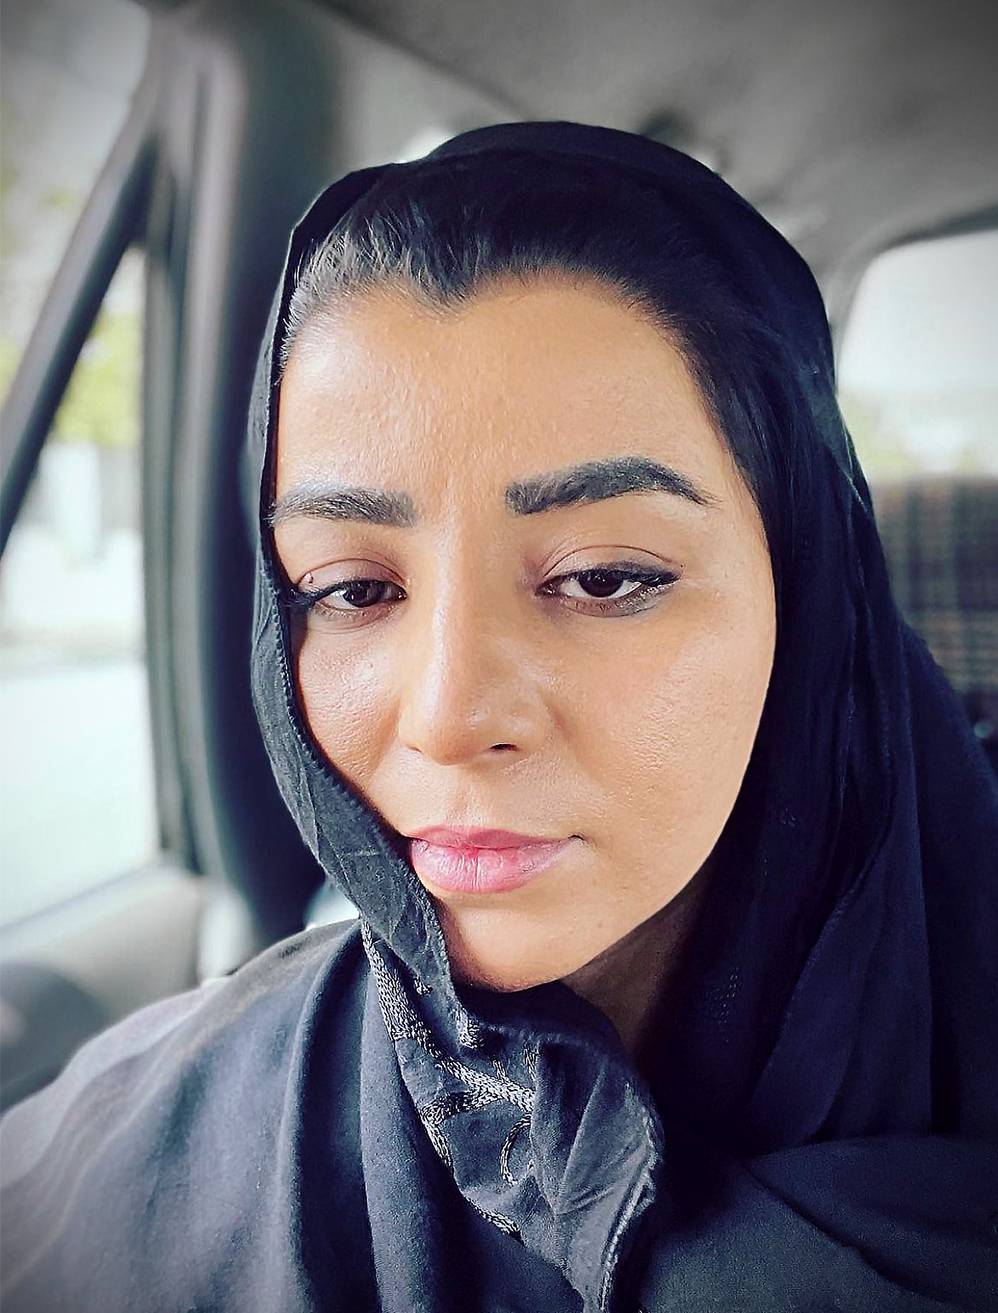  Die 29-jährige afghanische Parlamentsabgeordnete Farzana Kocha stand in einem emotionalen FaceTime-Telefonat Sven Lilienström, Gründer der Initiative „Gesichter des Friedens“ Rede und Antwort. 